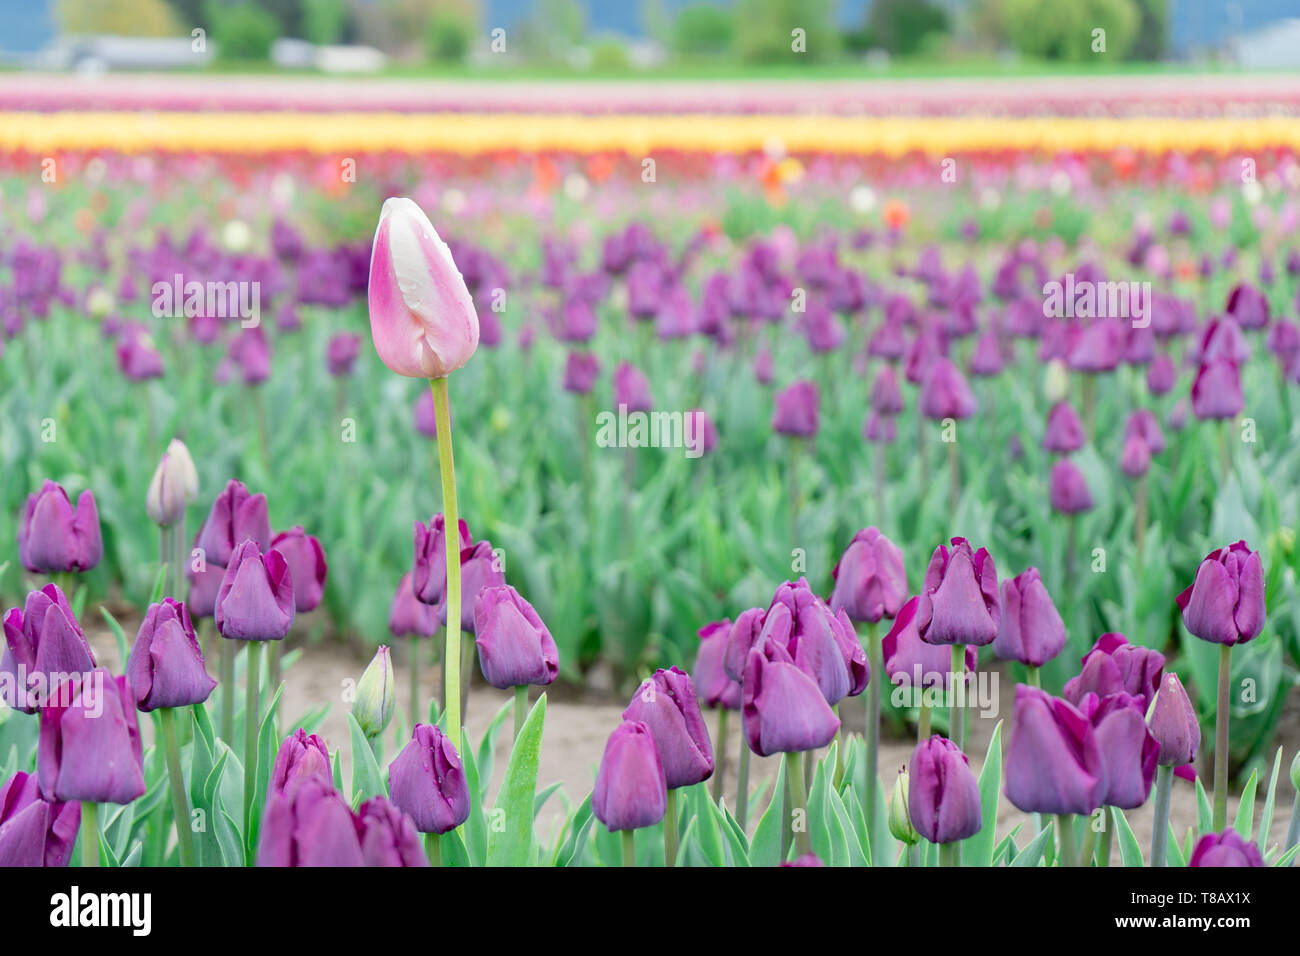 Belle, simple, rose et blanc différent de plus en plus grand des tulipes dans un champ de tulipes triomphe violet, sur une fleur ferme. Banque D'Images